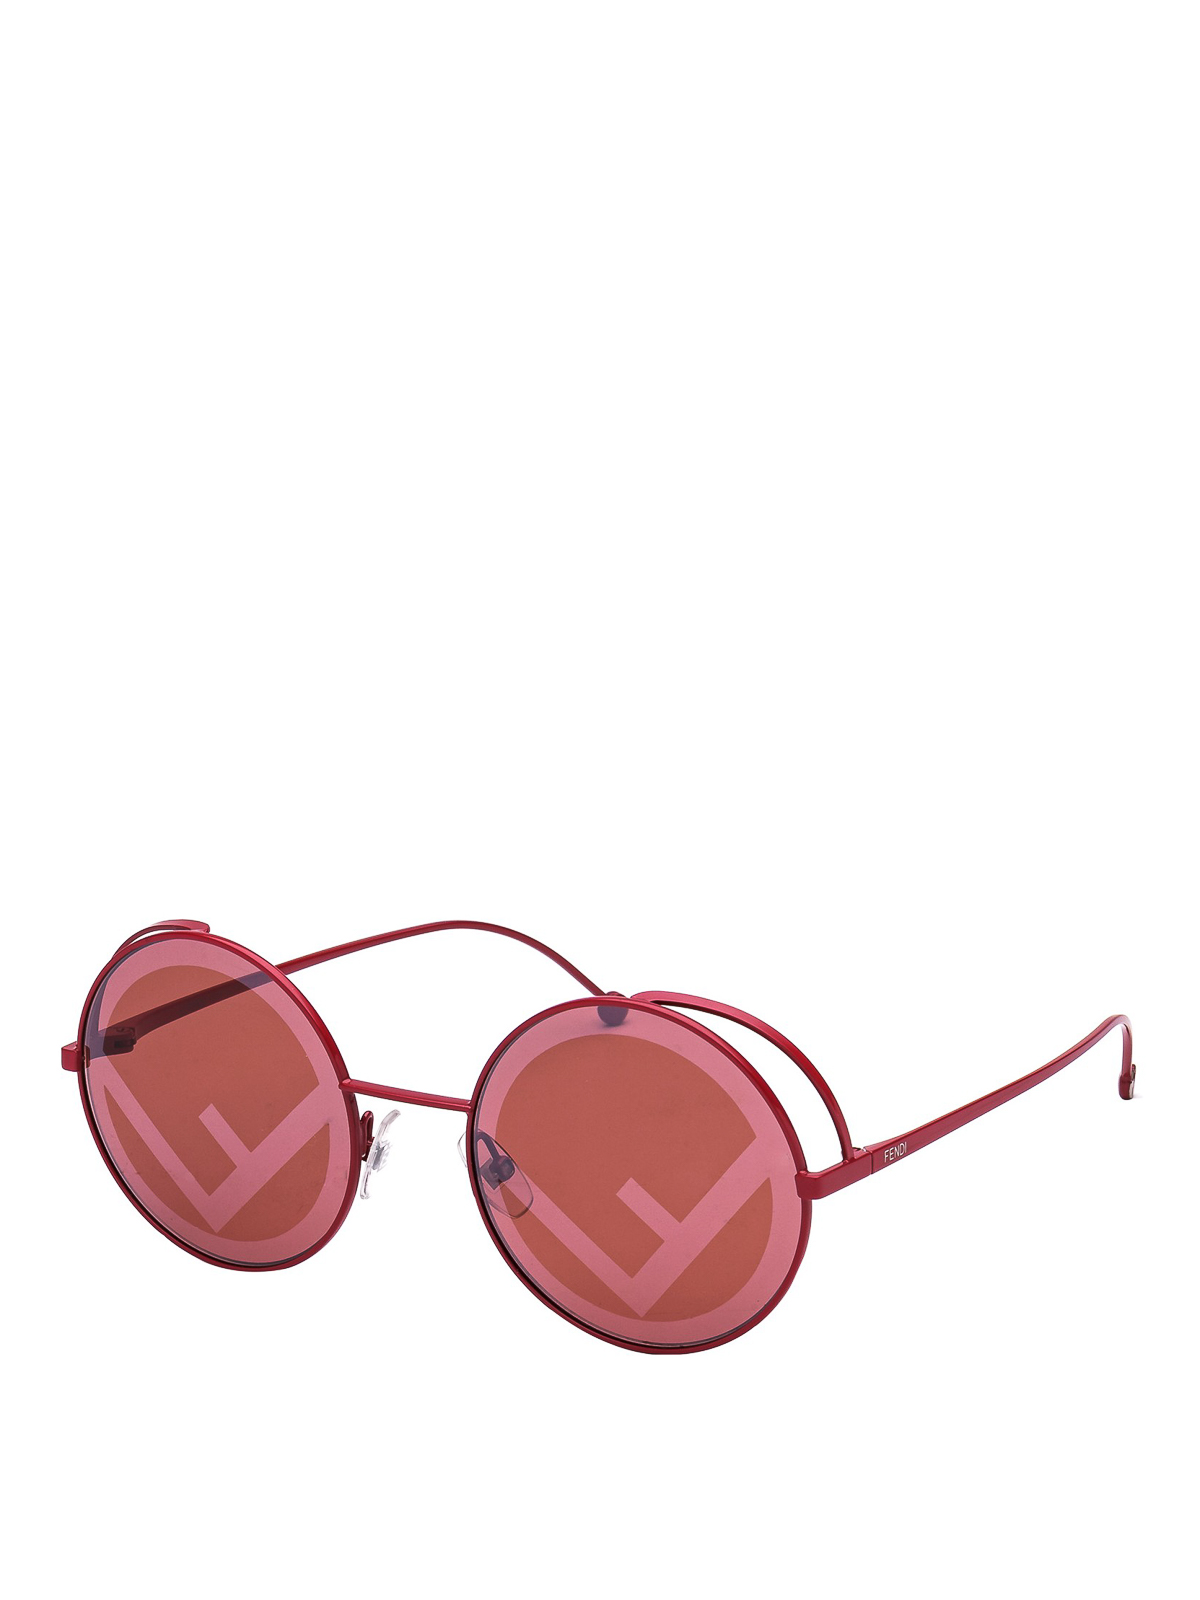 Fendirama red sunglasses